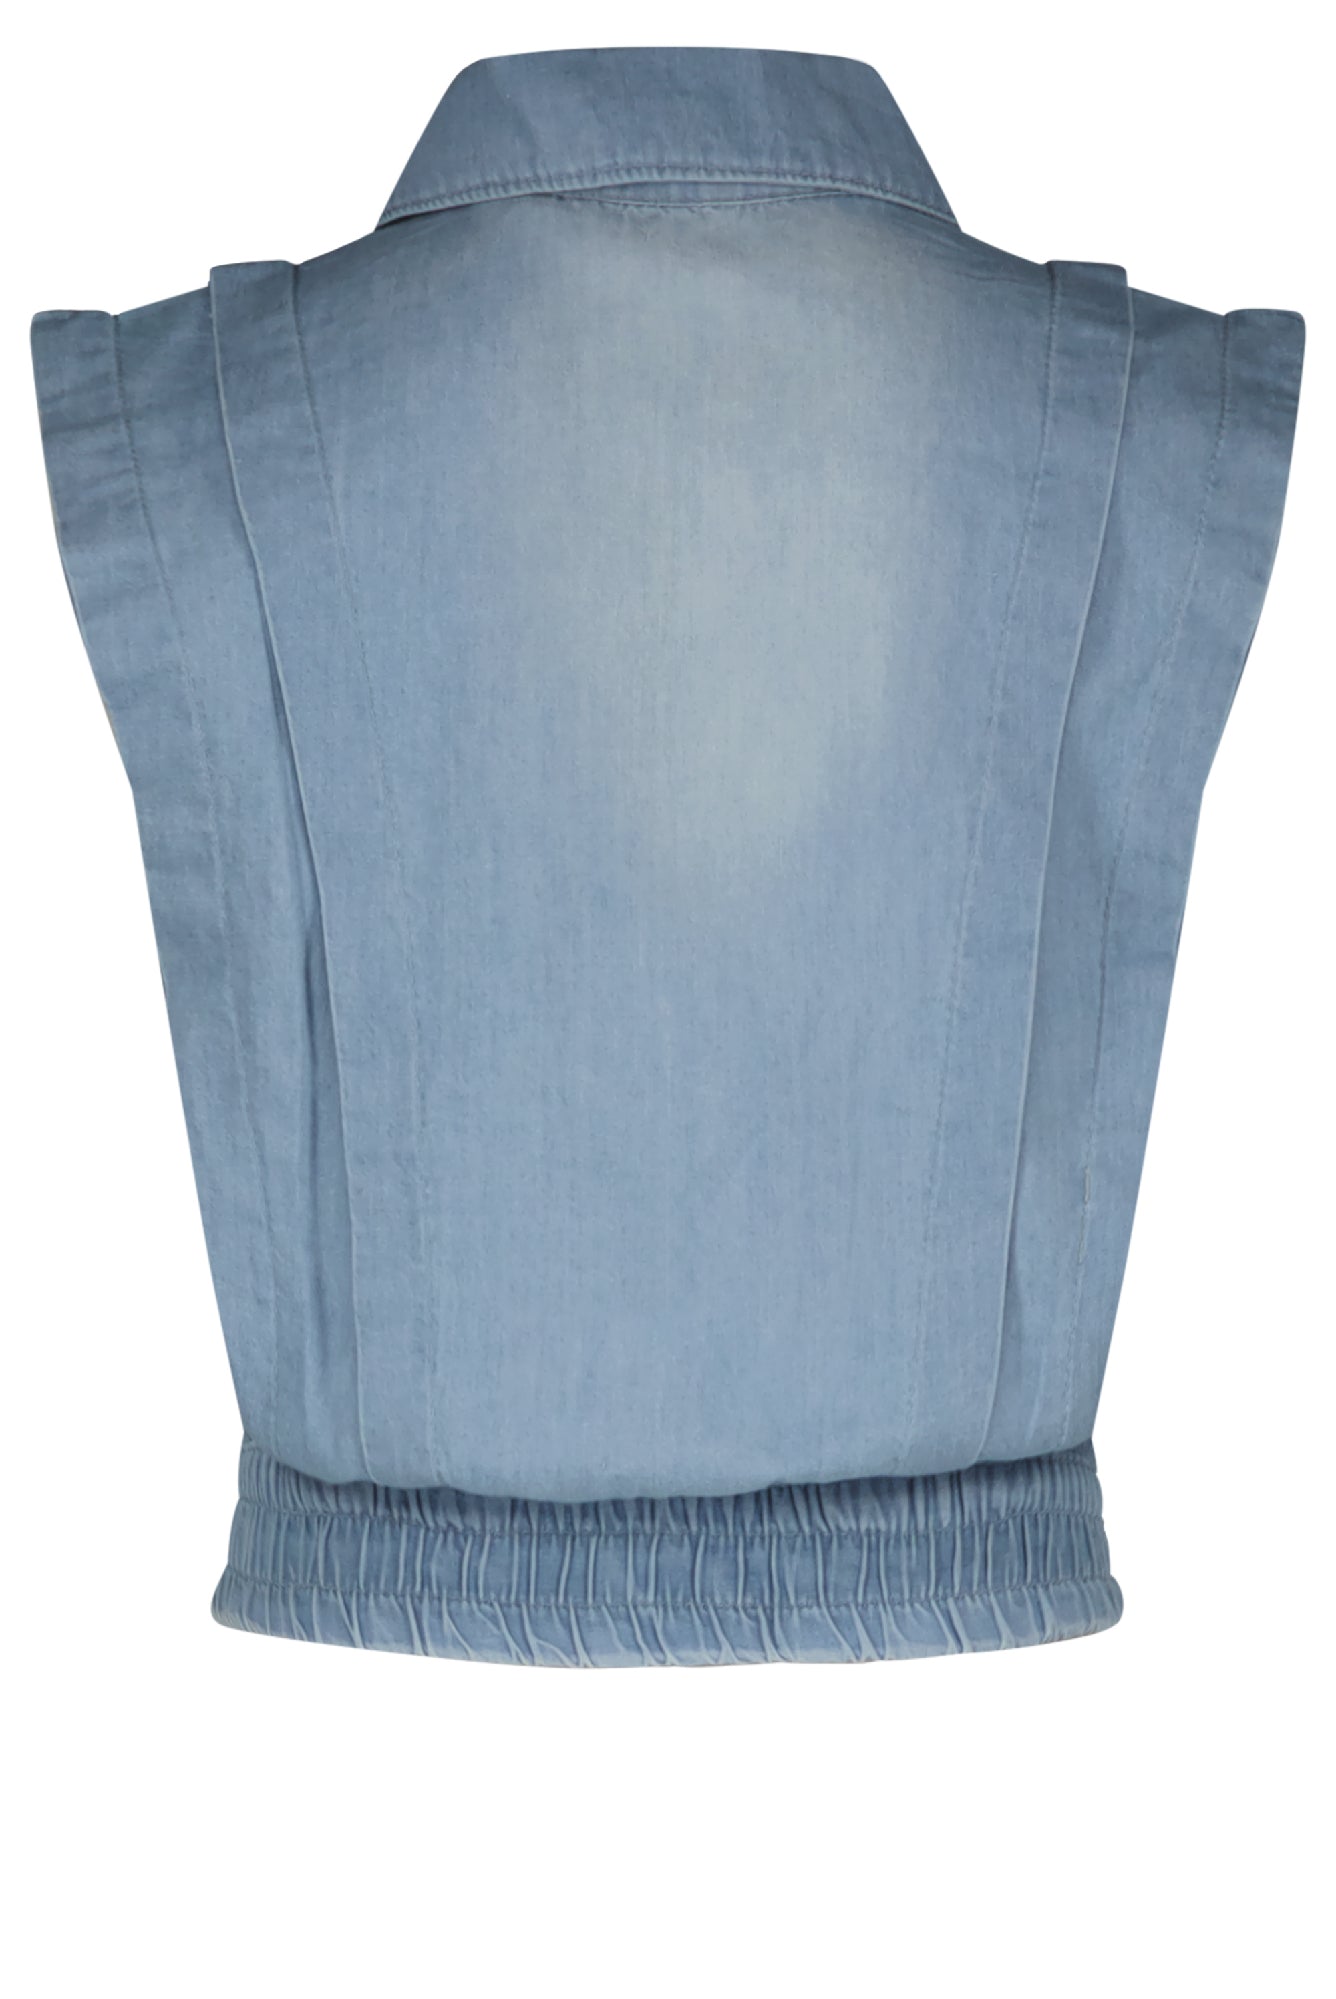 Meisjes Donka sleeveless denim button up vest van NoNo in de kleur Jeans in maat 134-140.